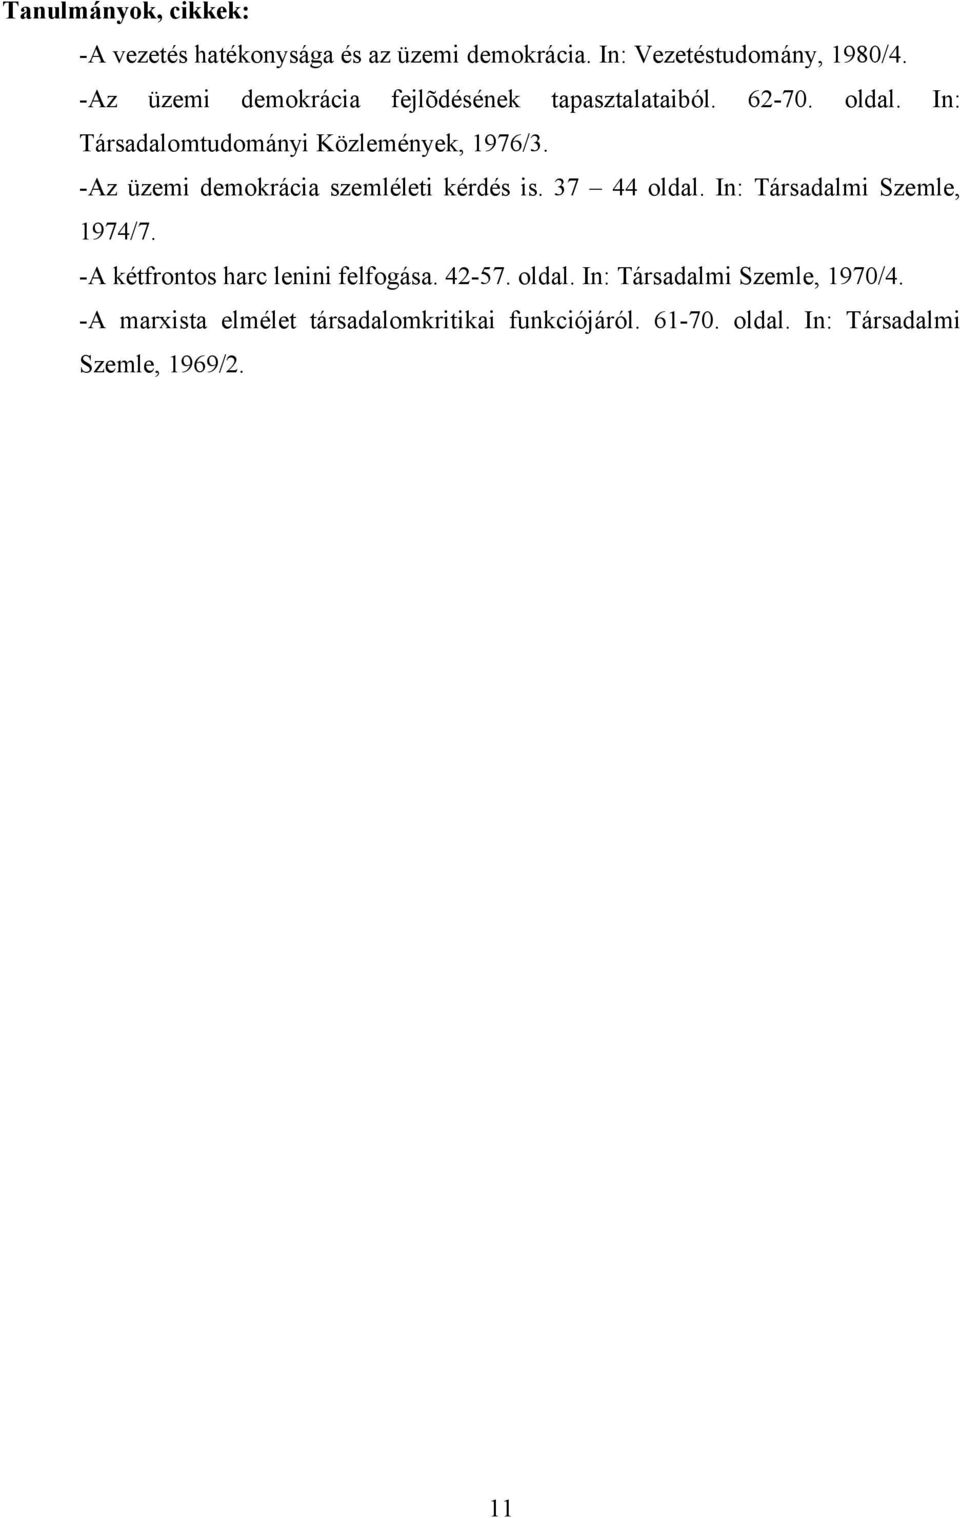 -Az üzemi demokrácia szemléleti kérdés is. 37 44 oldal. In: Társadalmi Szemle, 1974/7.